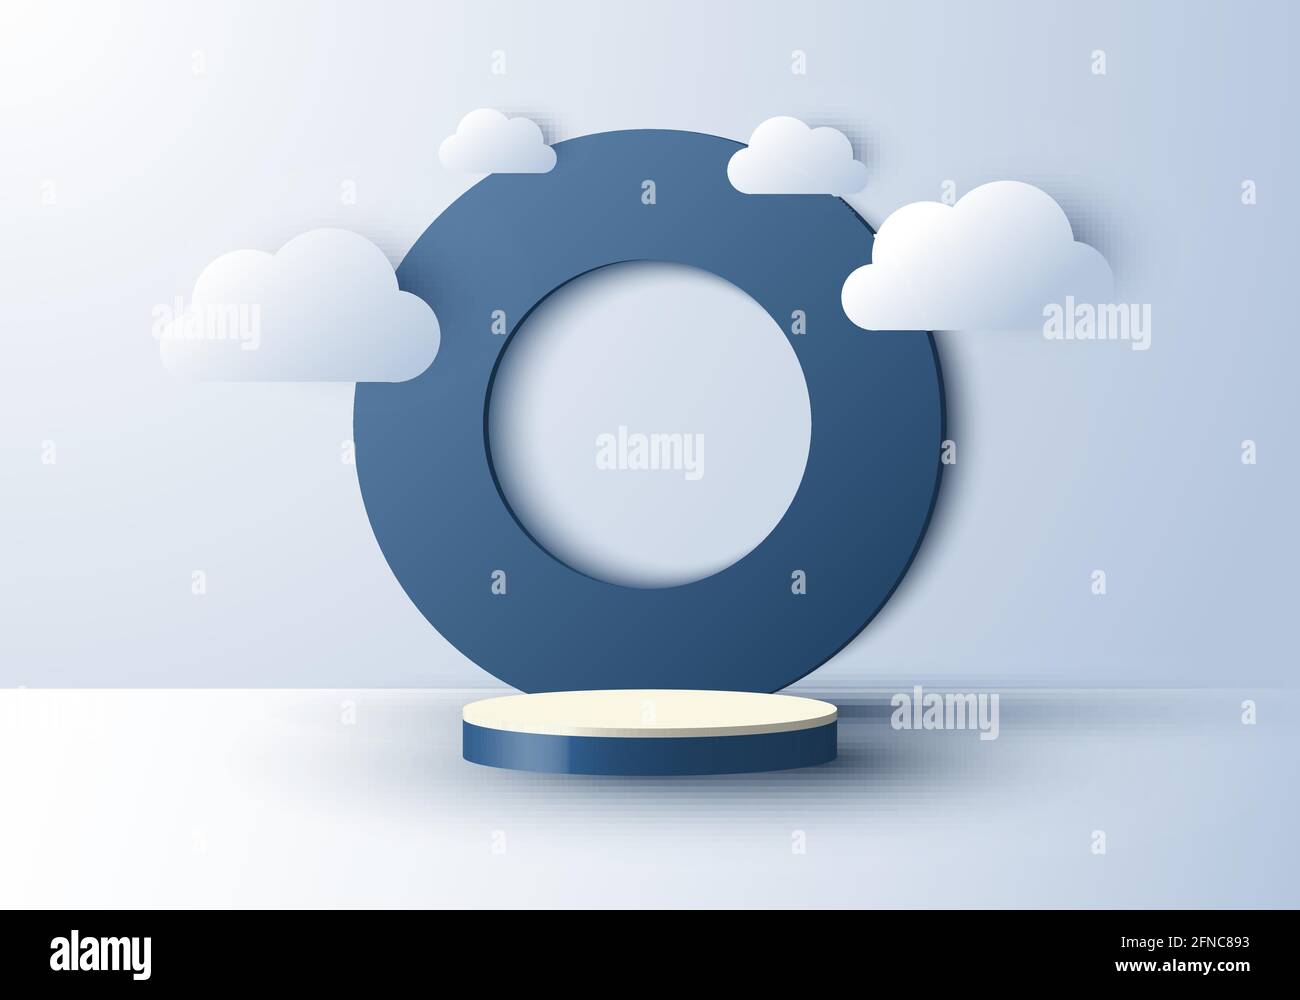 3D réaliste résumé scène minimale formes géométriques cercle toile de fond et vide podium affichage avec nuage sur fond bleu ciel. Conception du produit p Illustration de Vecteur